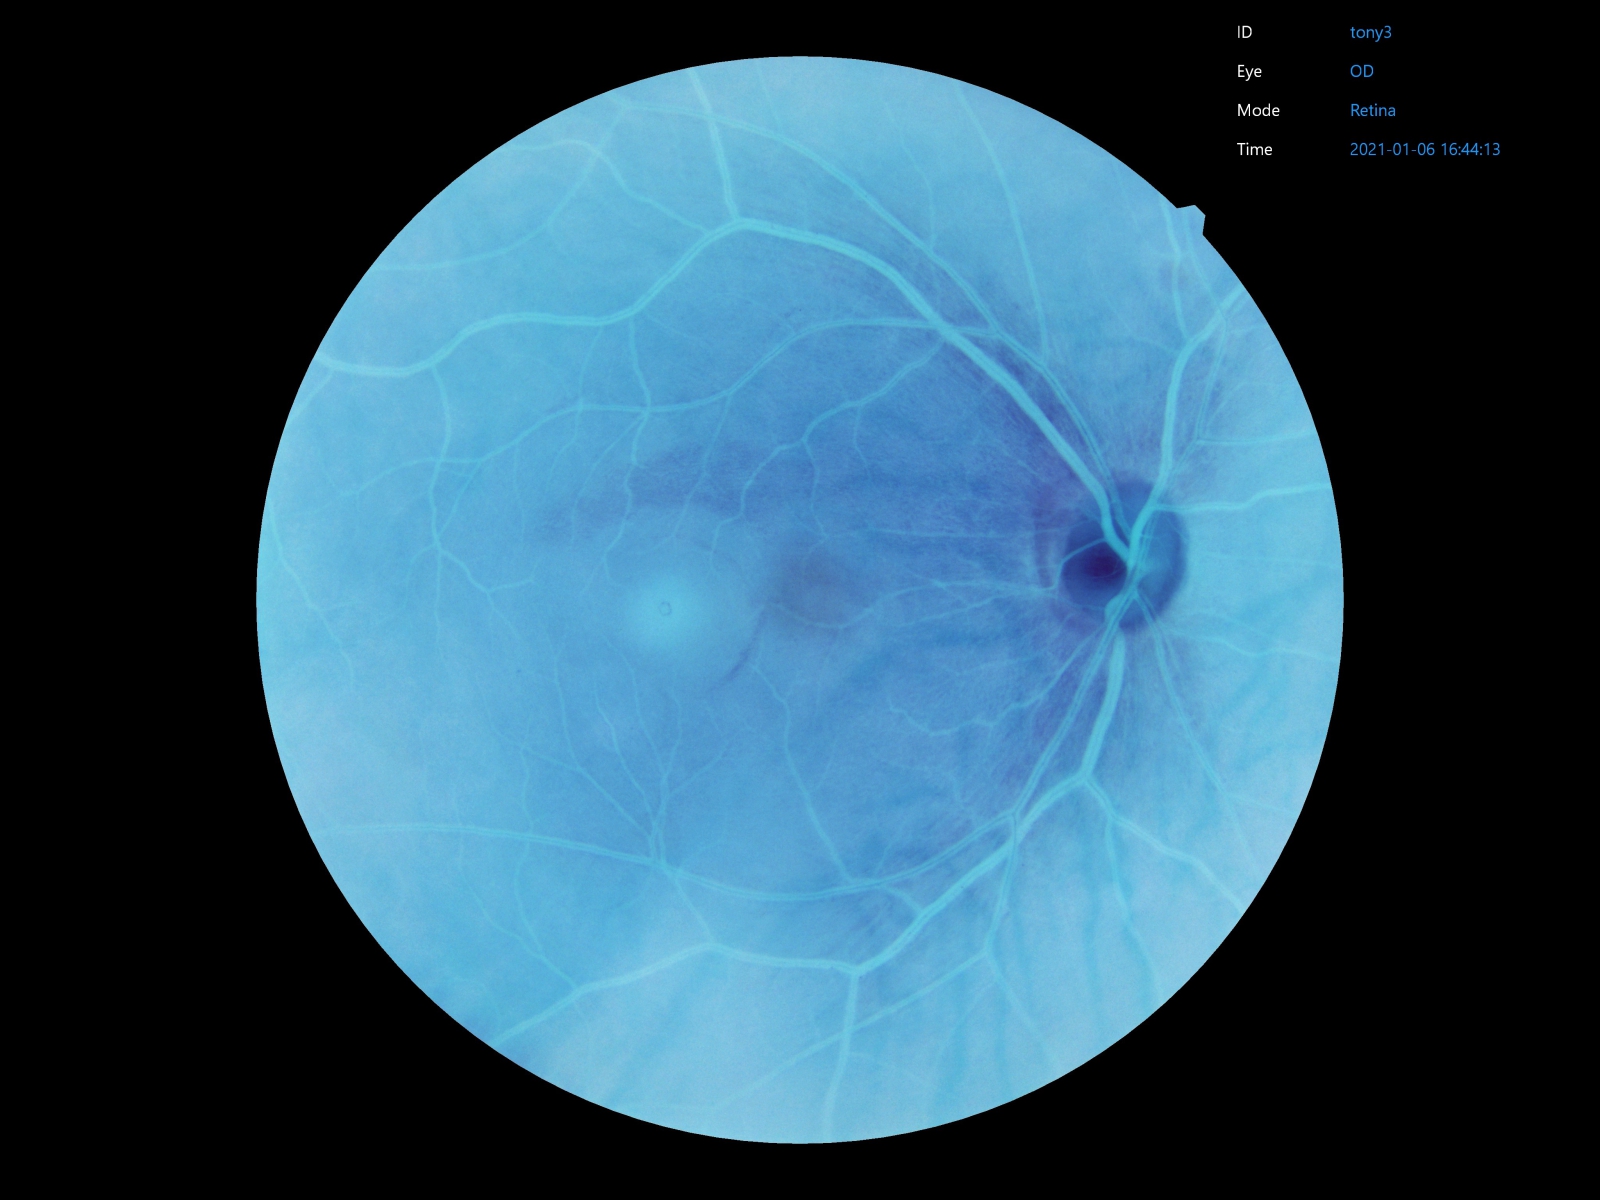 明達醫學眼底攝影機具備內建眼底圖影像處理功能